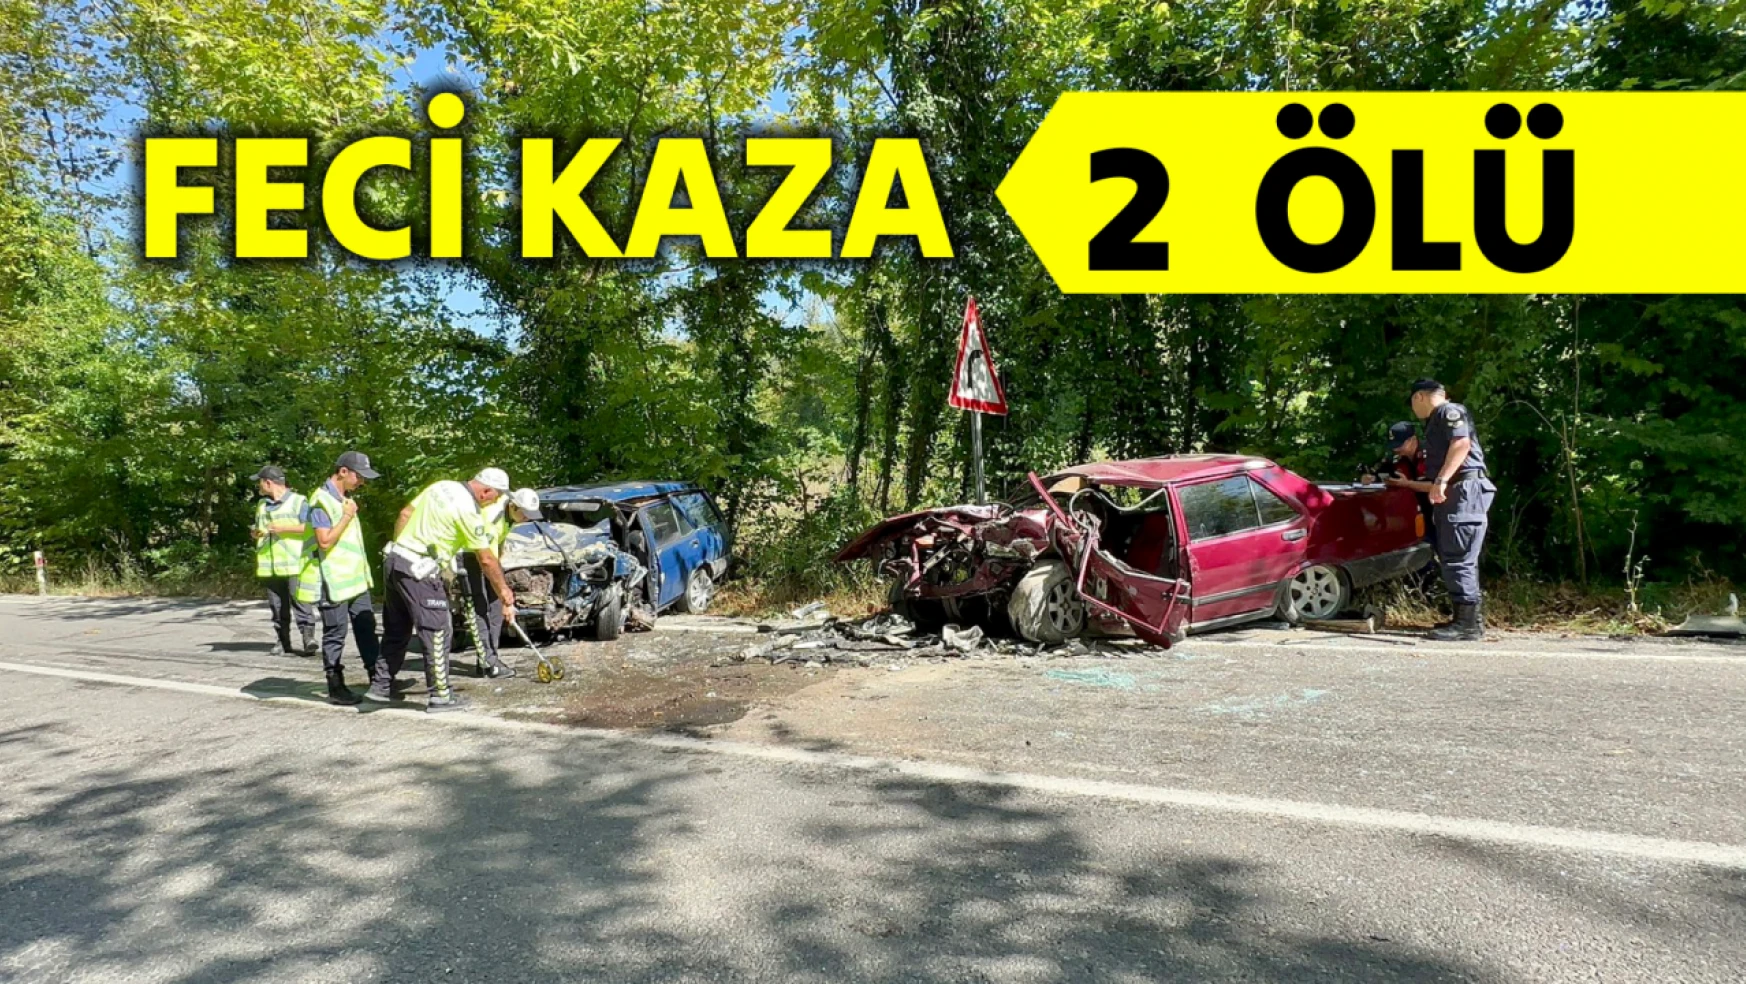 Bartın'da feci kaza: 2 ölü